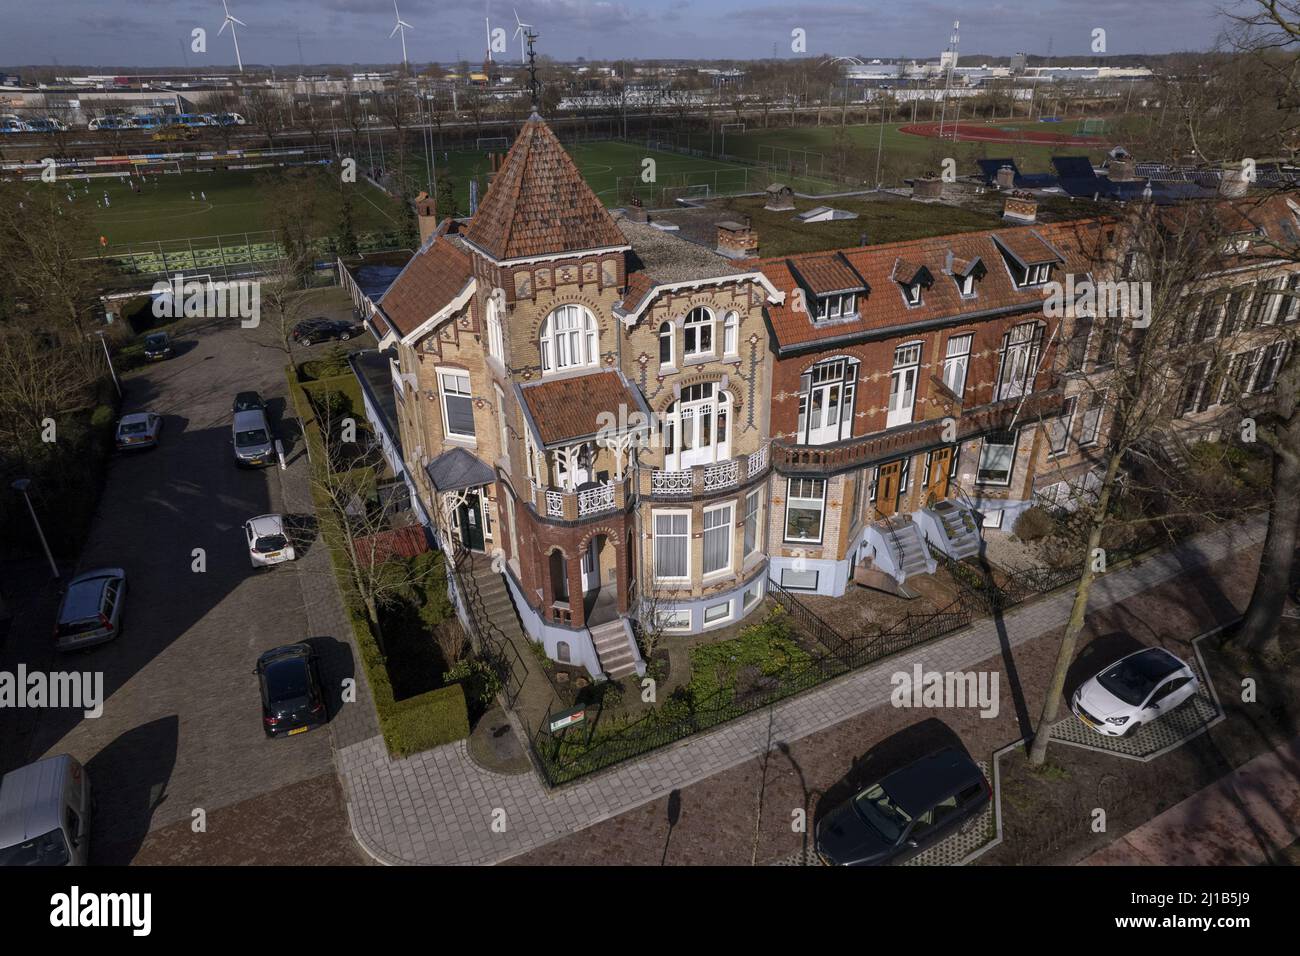 Vista aerea d'angolo di architettura storica, colorate case residenziali in stile Art Nouveau ispirate all'antropoposopo Foto Stock